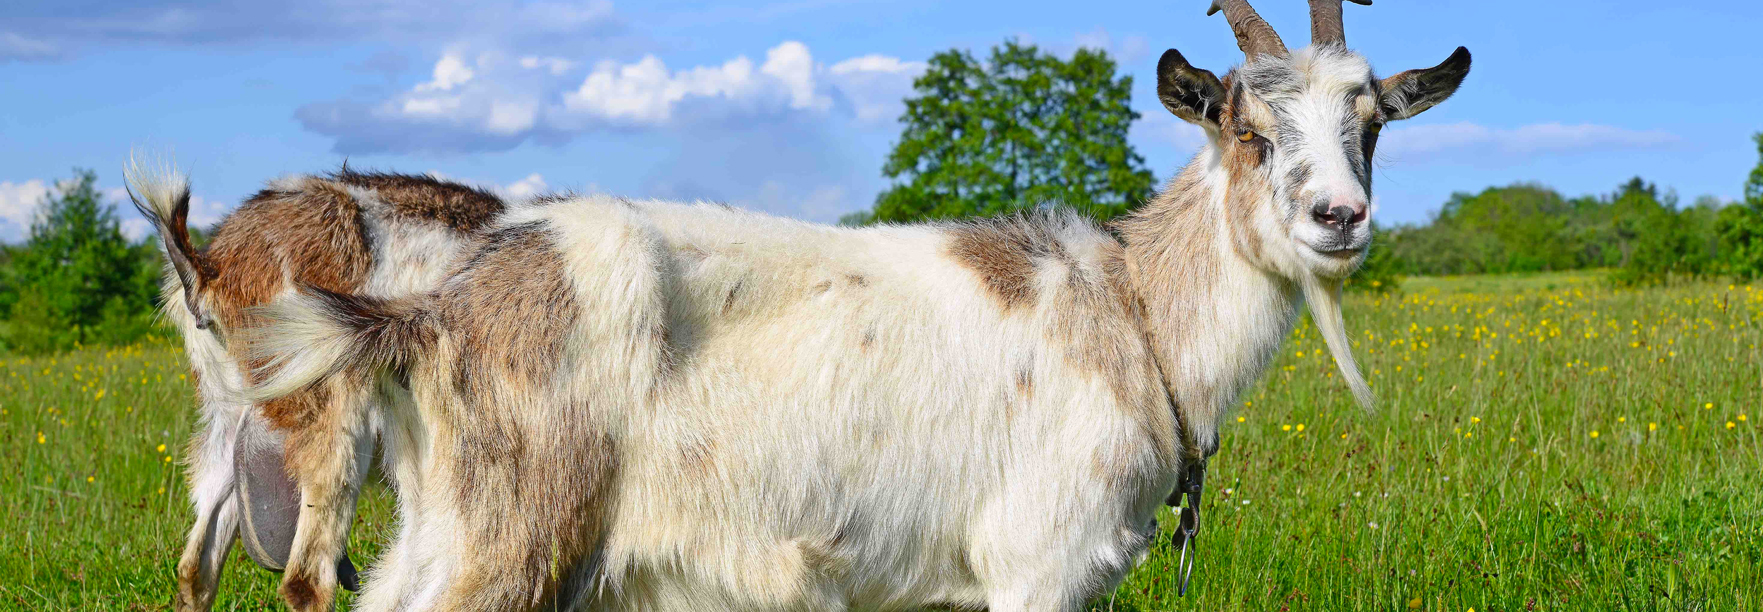 7 Conseils pour bien accueillir des chèvres - Le Fonds Saint-Bernard